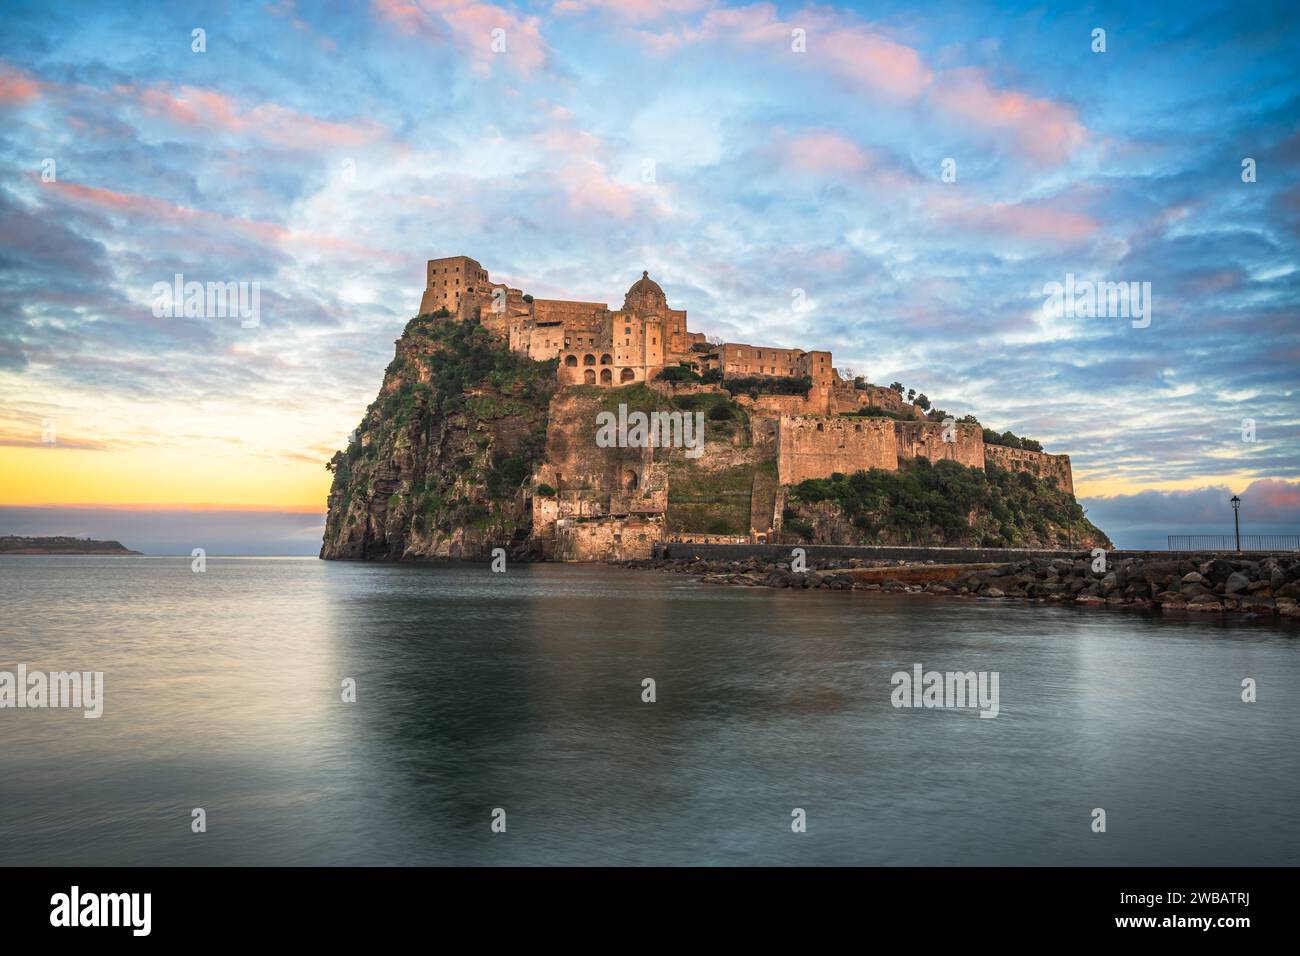 Ischia, Italie avec le château aragonais dans la Méditerranée au crépuscule. Banque D'Images